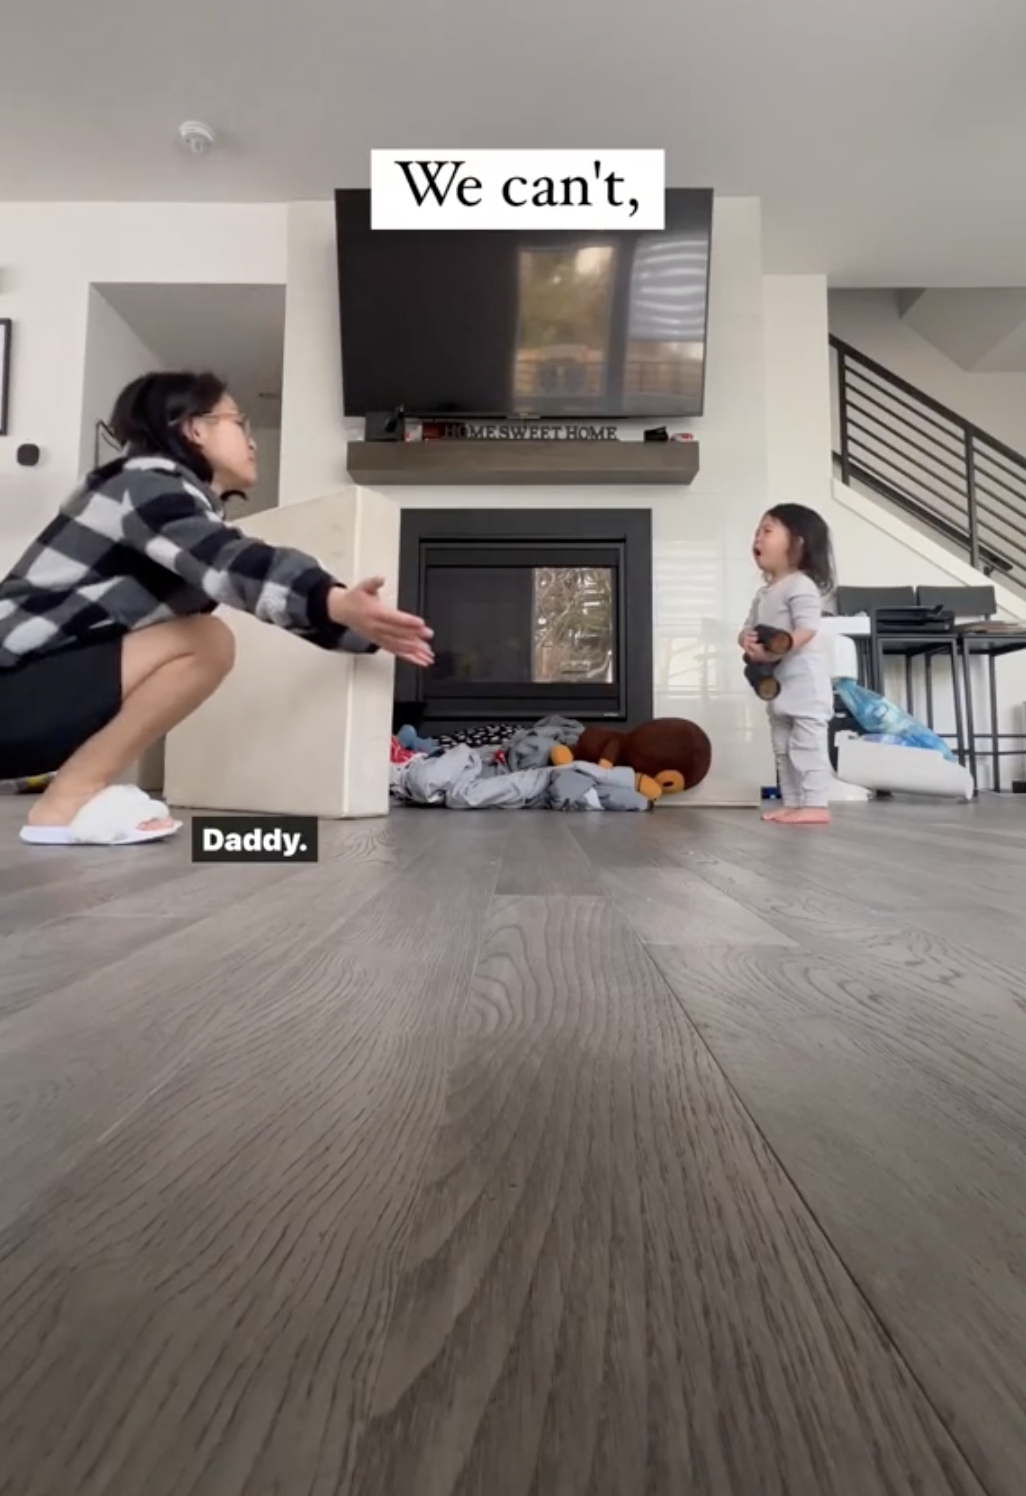 Gigi faisant la démonstration d'une méthode d'éducation douce avec sa fille dans un clip TikTok publié le 27 février 202s | Source : TikTok/mom.ma.gi